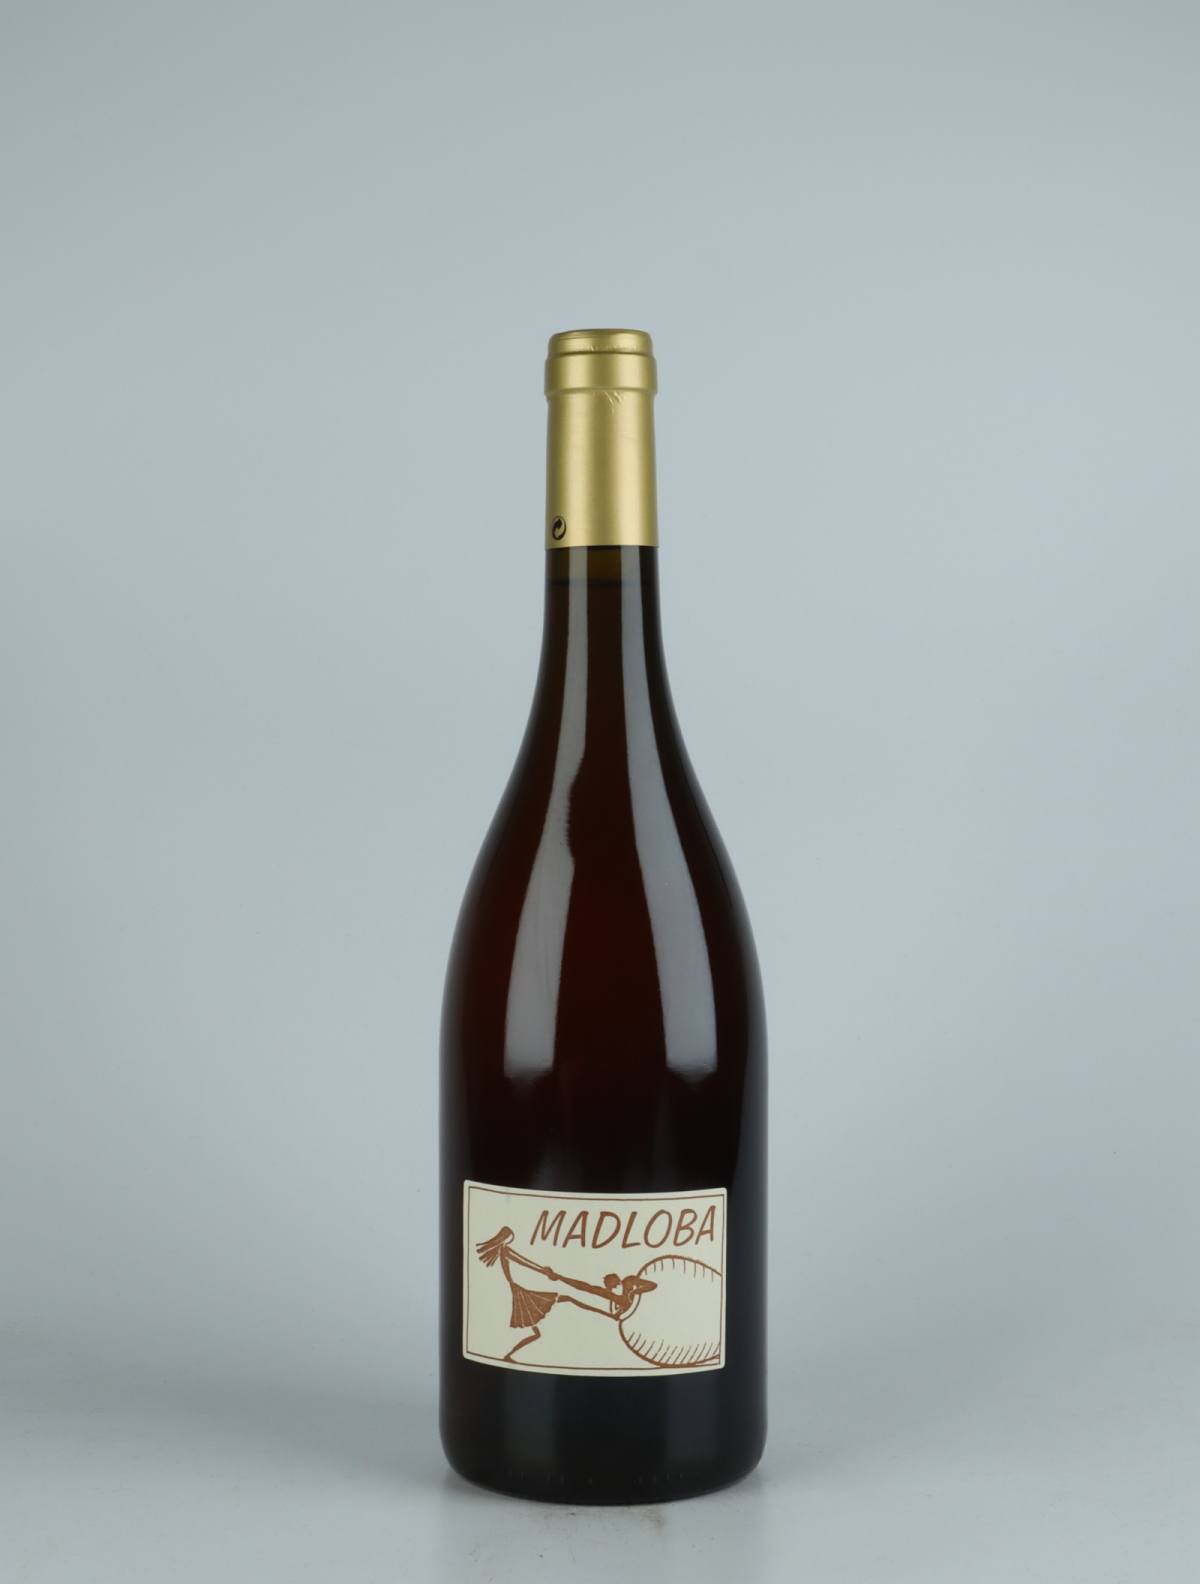 En flaske 2020 Madloba Blanc Orange vin fra Domaine des Miquettes, Rhône i Frankrig